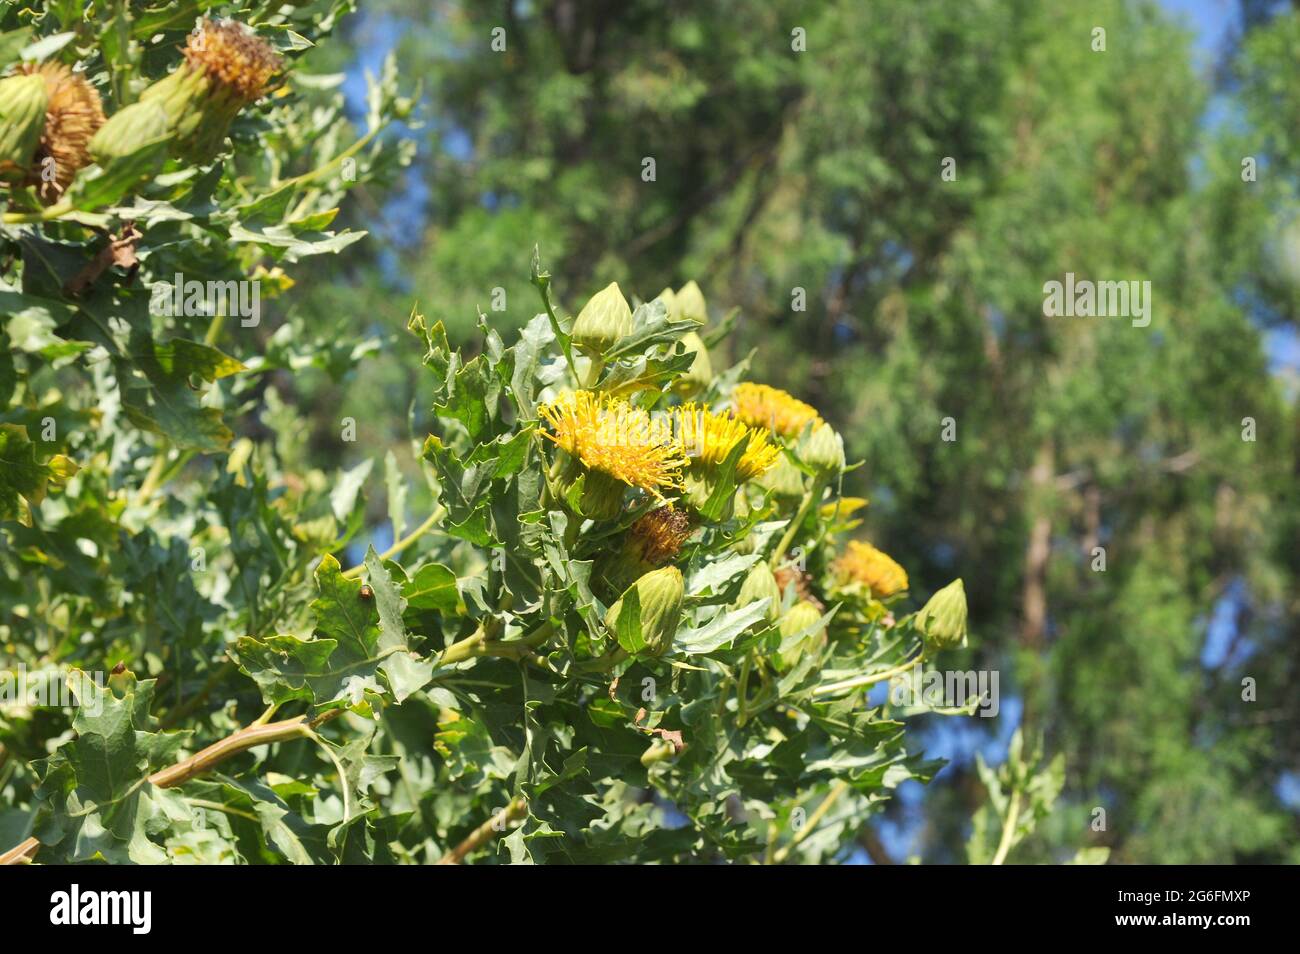 Warionia saharae est un arbuste aromatique endémique au Maroc et en Algérie. Plante à fleurs. Banque D'Images